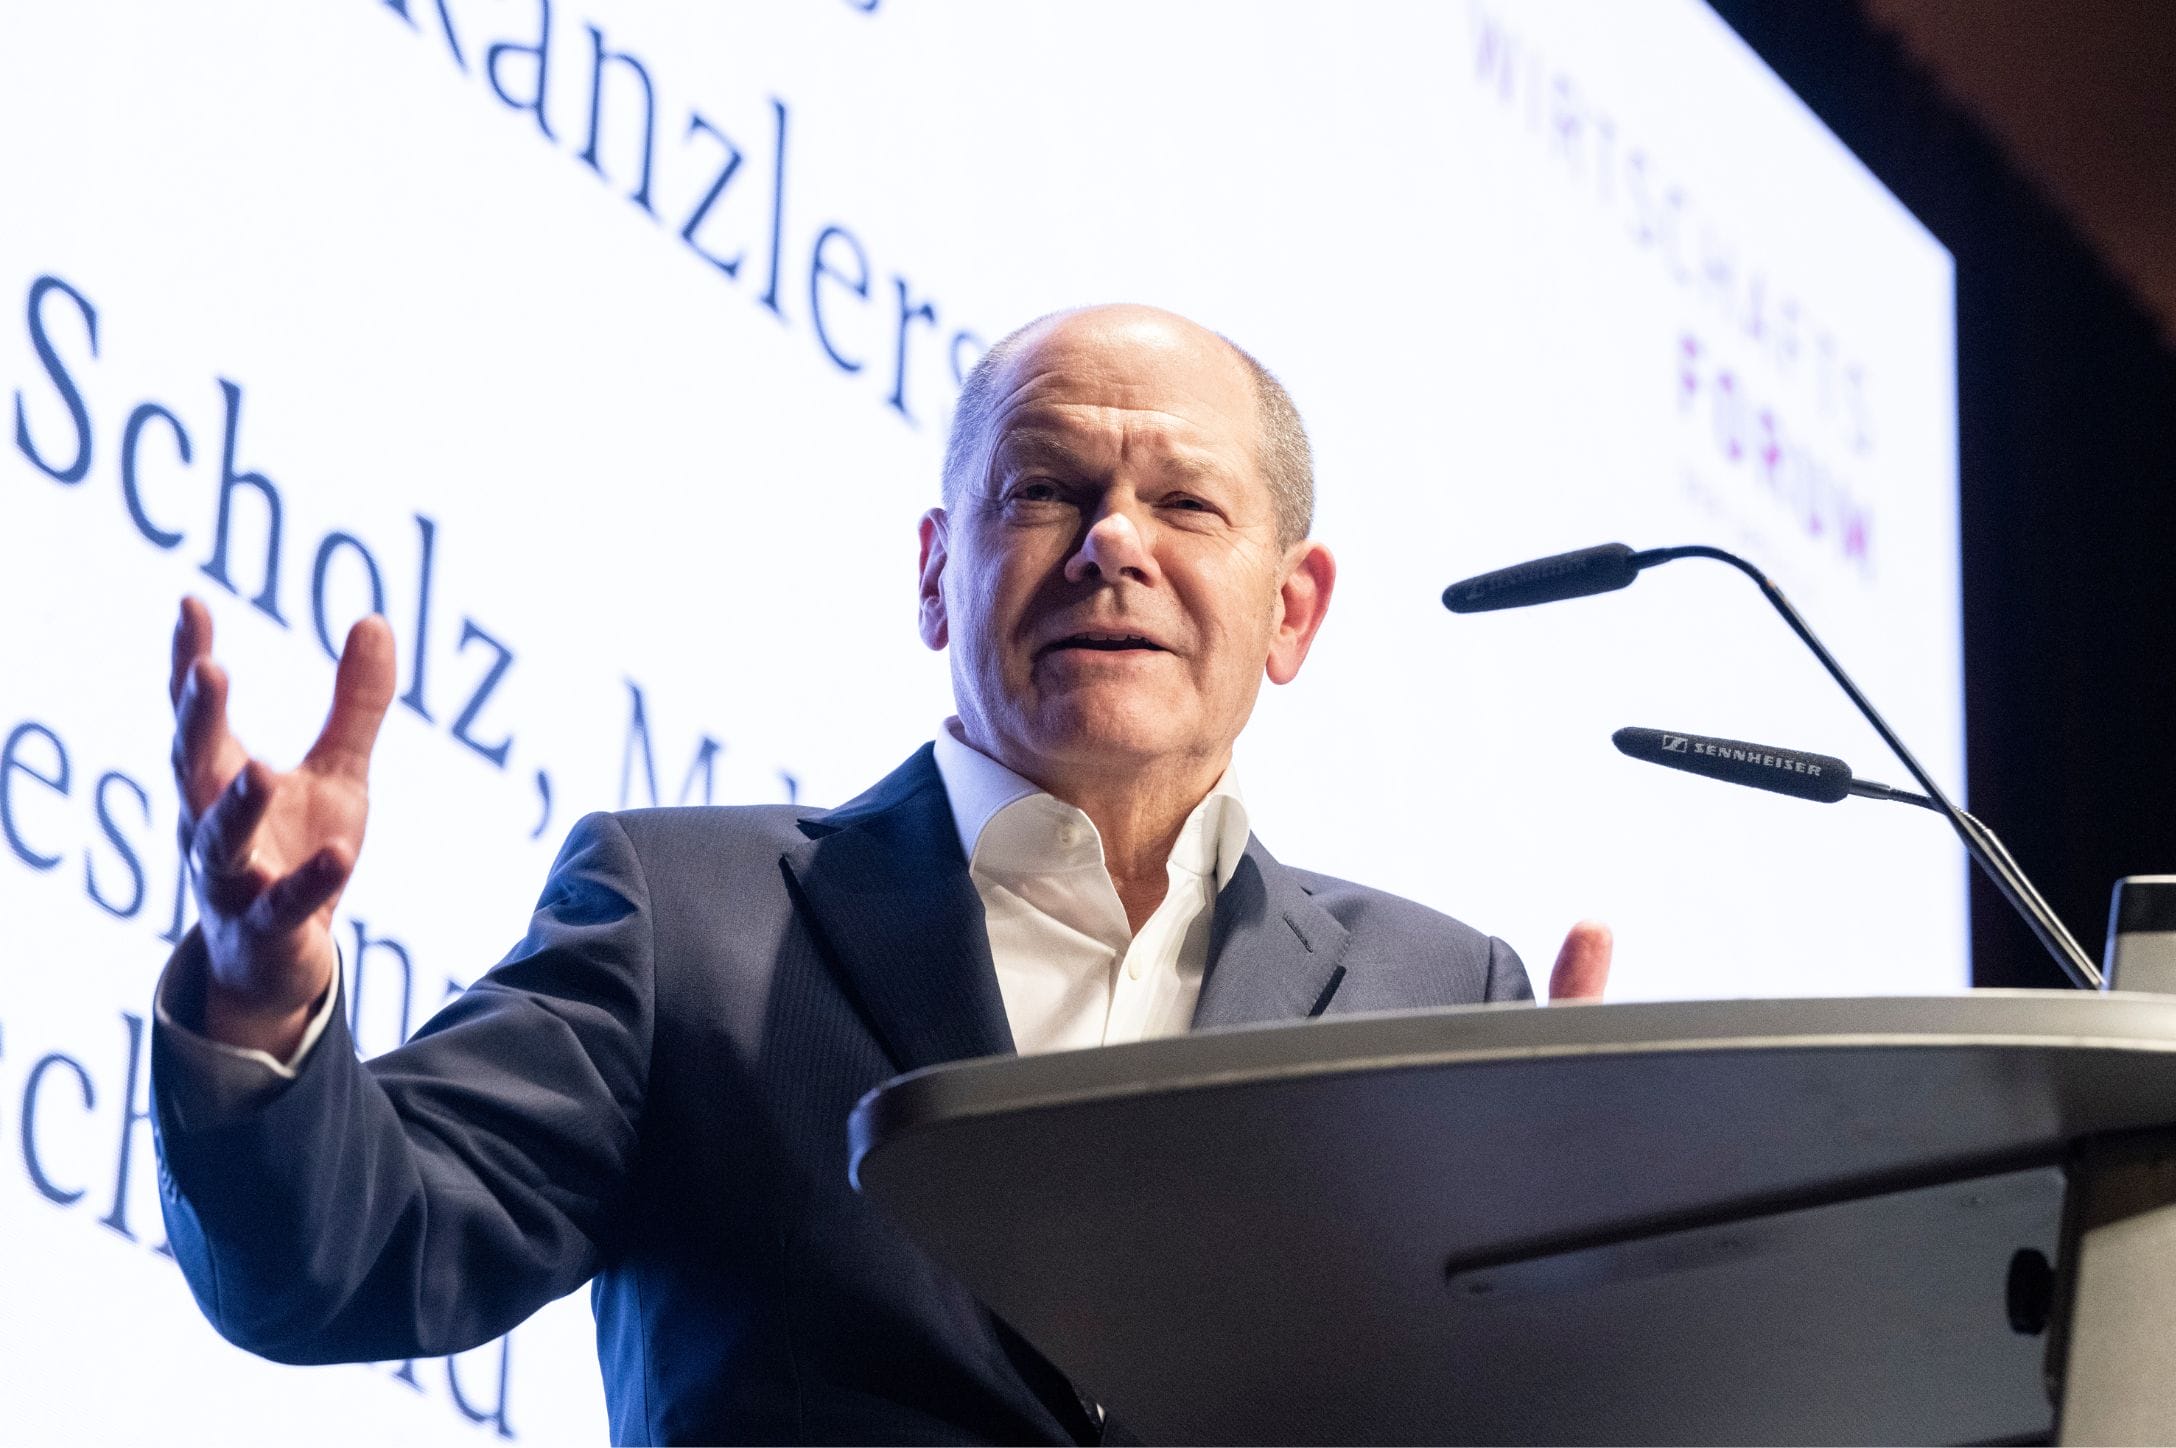 Olaf Scholz zu Gast: Deutschlands Chancen liegen in einer multipolaren Welt